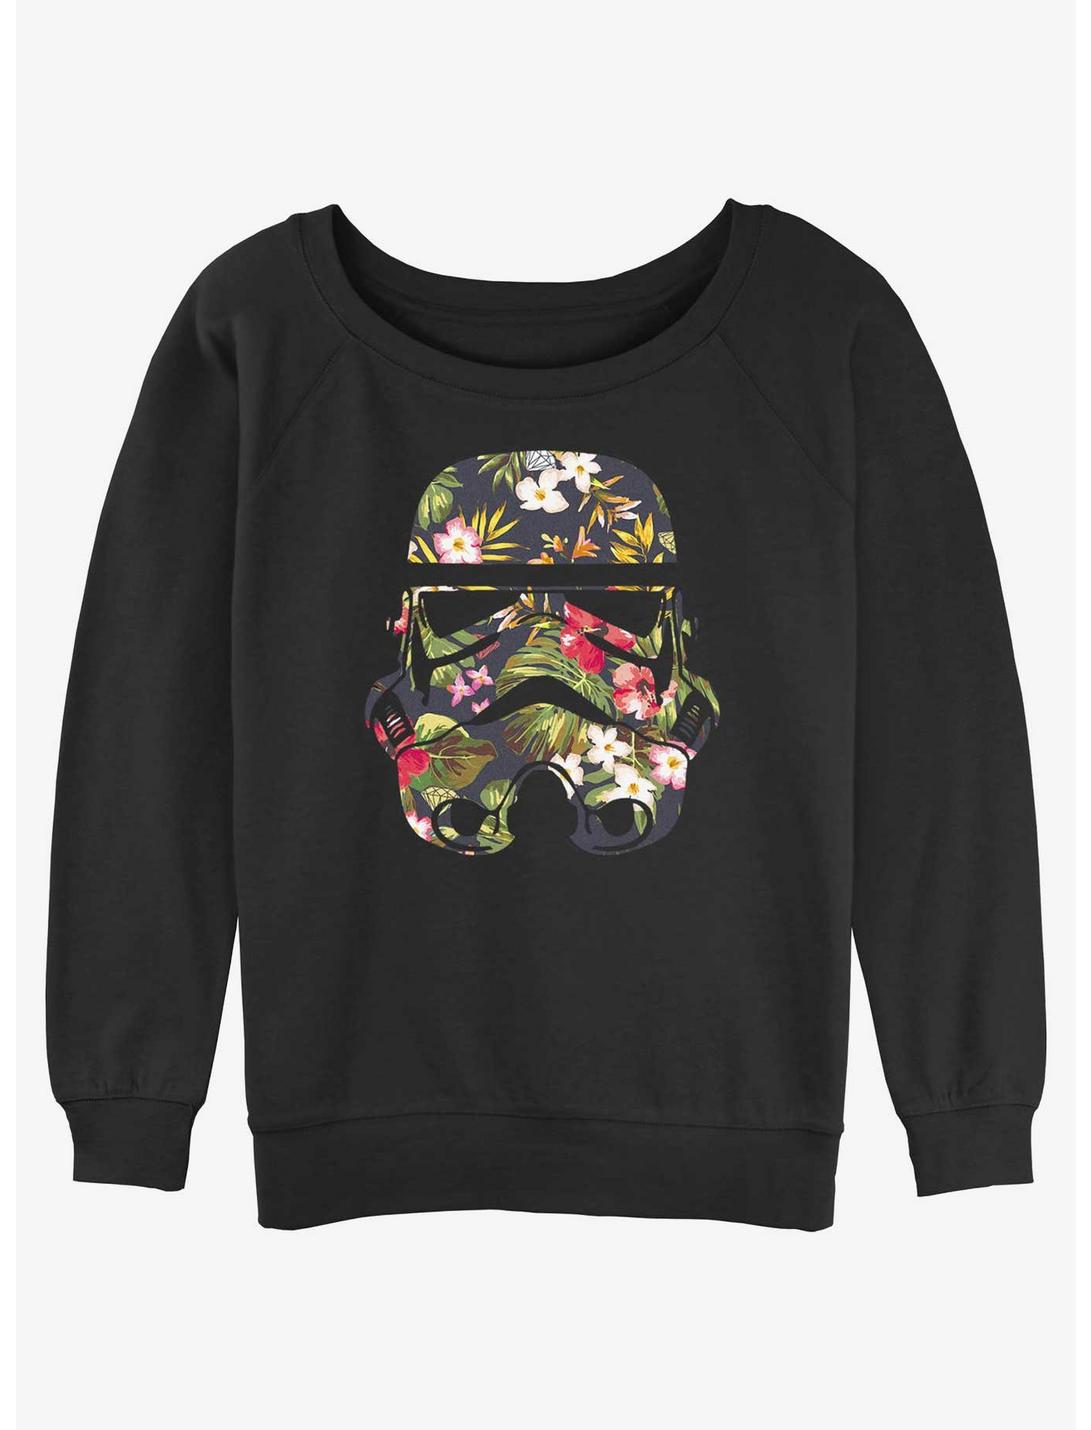 Star Wars Storm Trooper Floral Womens Slouchy Sweatshirt, BLACK, hi-res